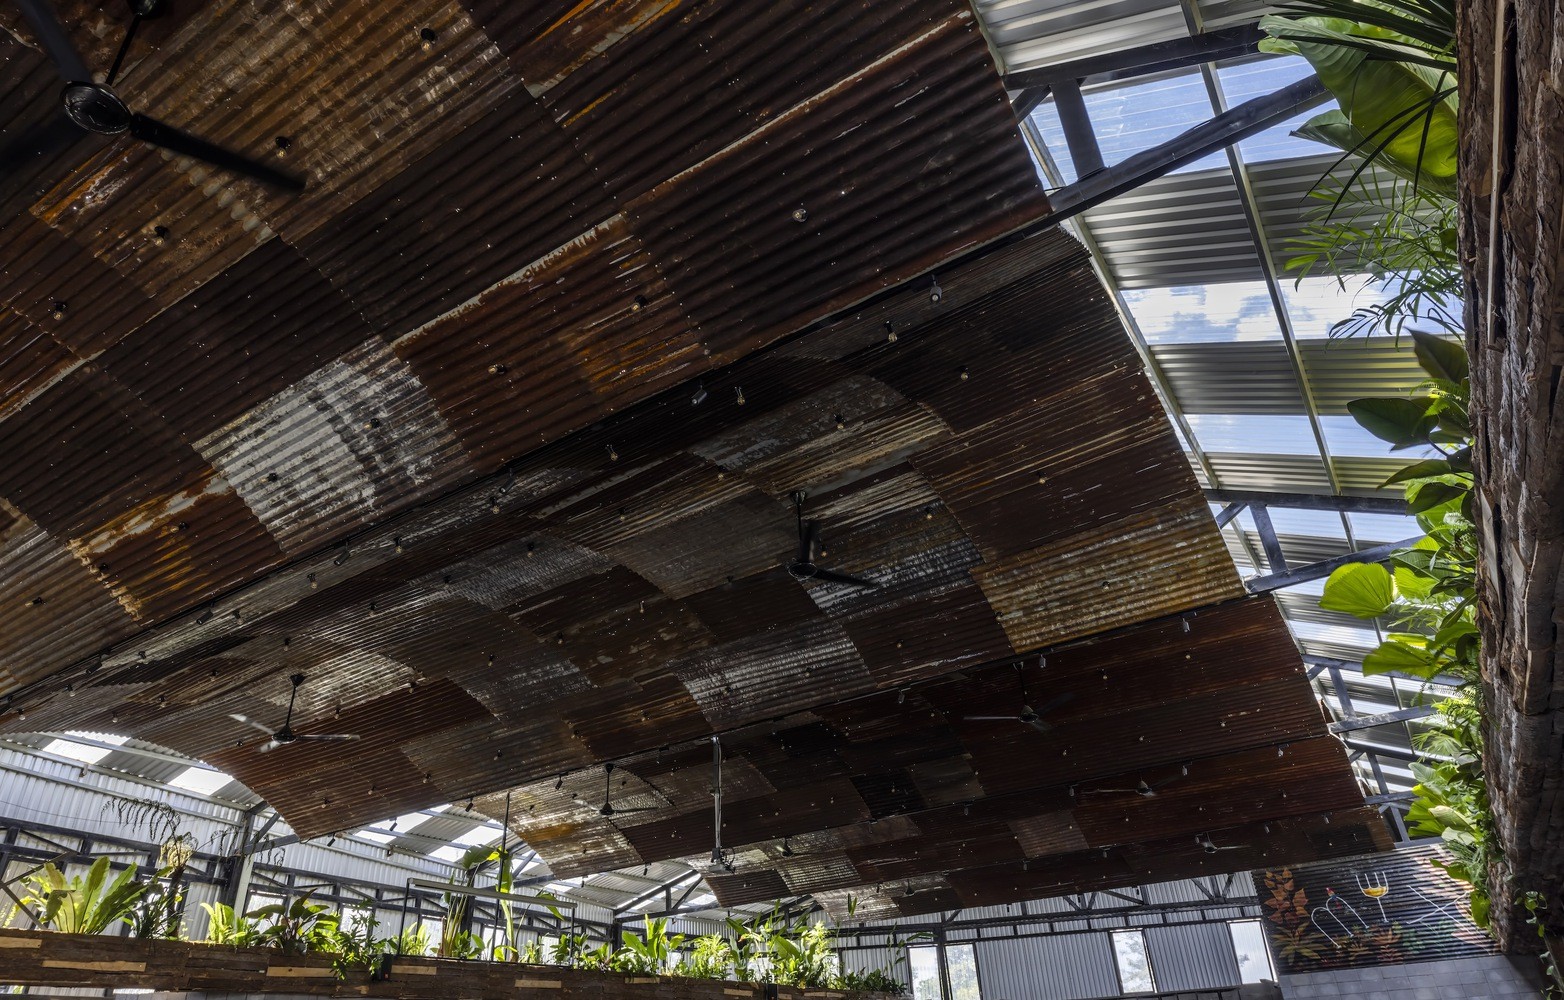 Chiêm ngưỡng nhà hàng dùng nghìn thanh gỗ làm mái được báo nước ngoài đưa tin